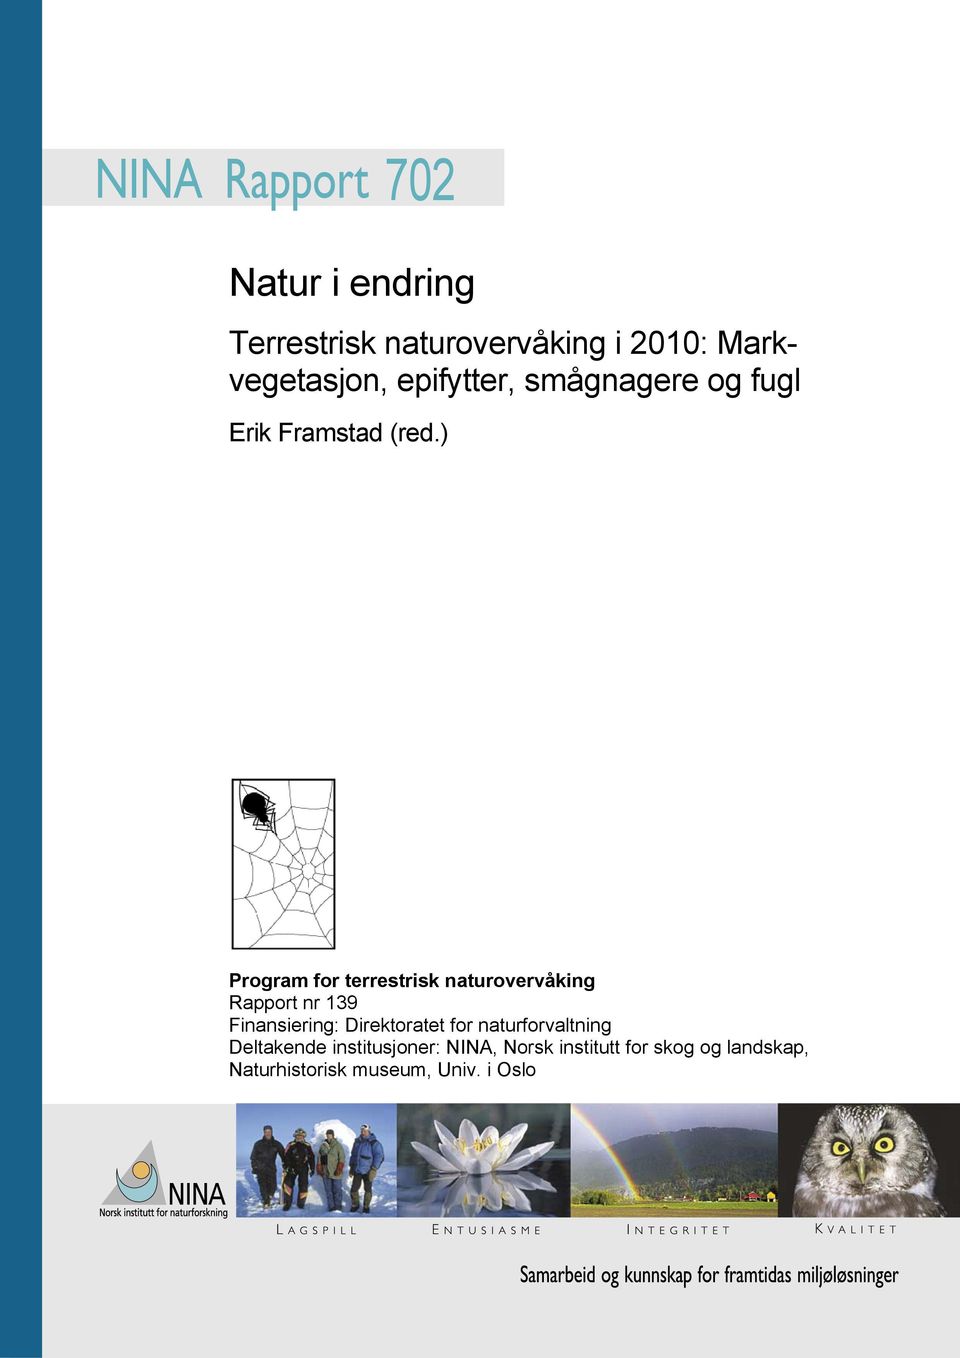 ) Program for terrestrisk naturovervåking Rapport nr 139 Finansiering: